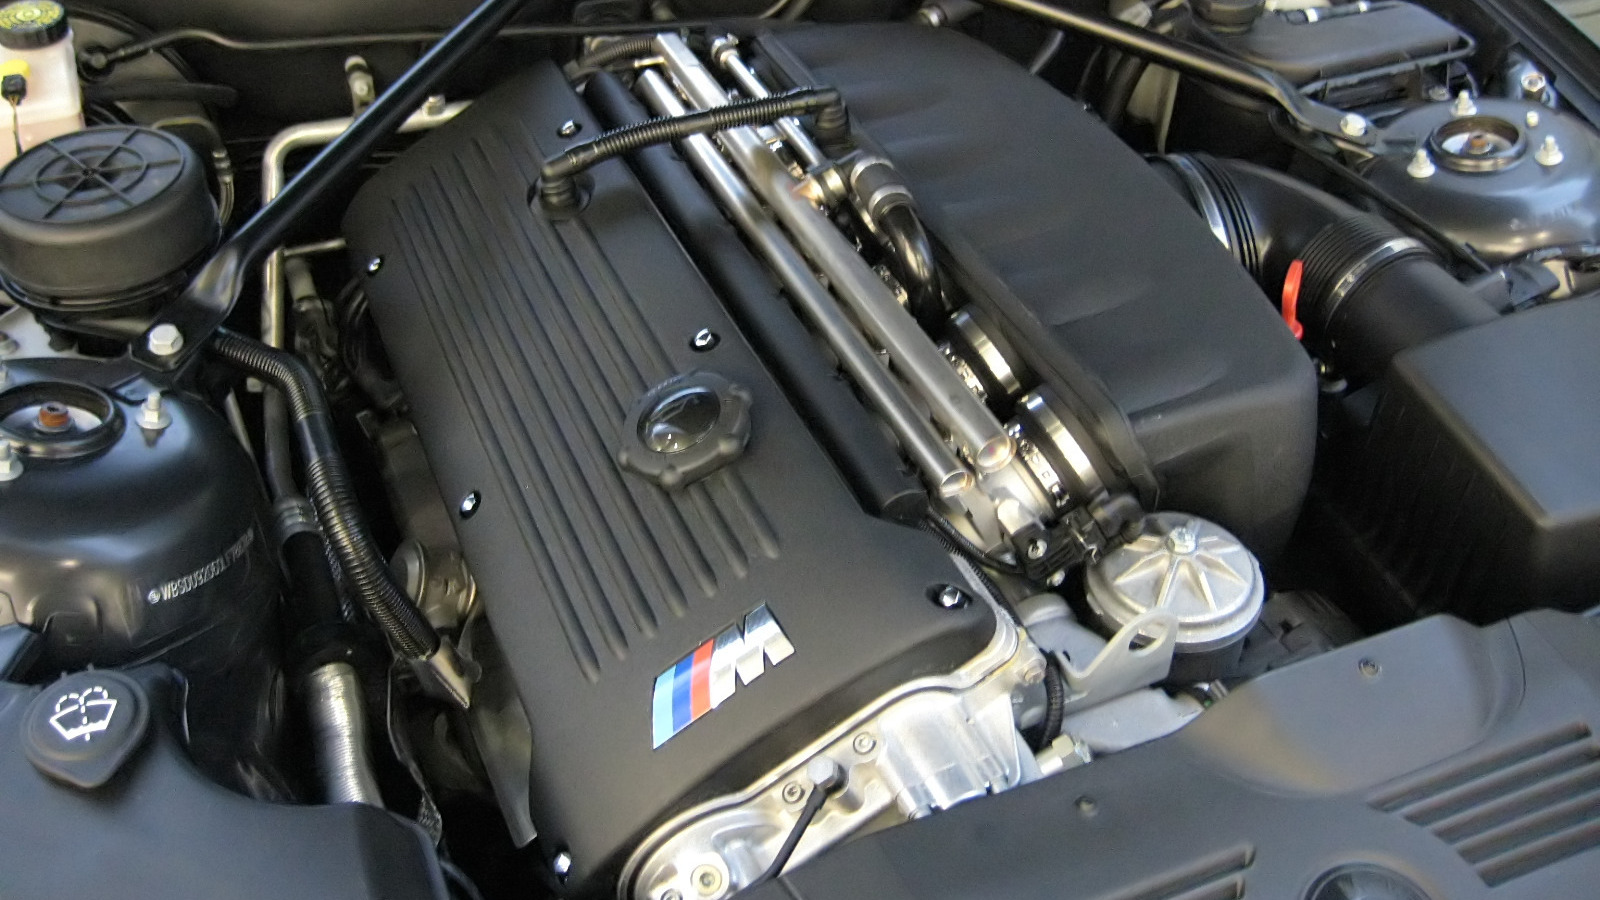 ¿Qué coches tienen el motor S54 de BMW debajo del capó y cuántos caballos de fuerza tiene?